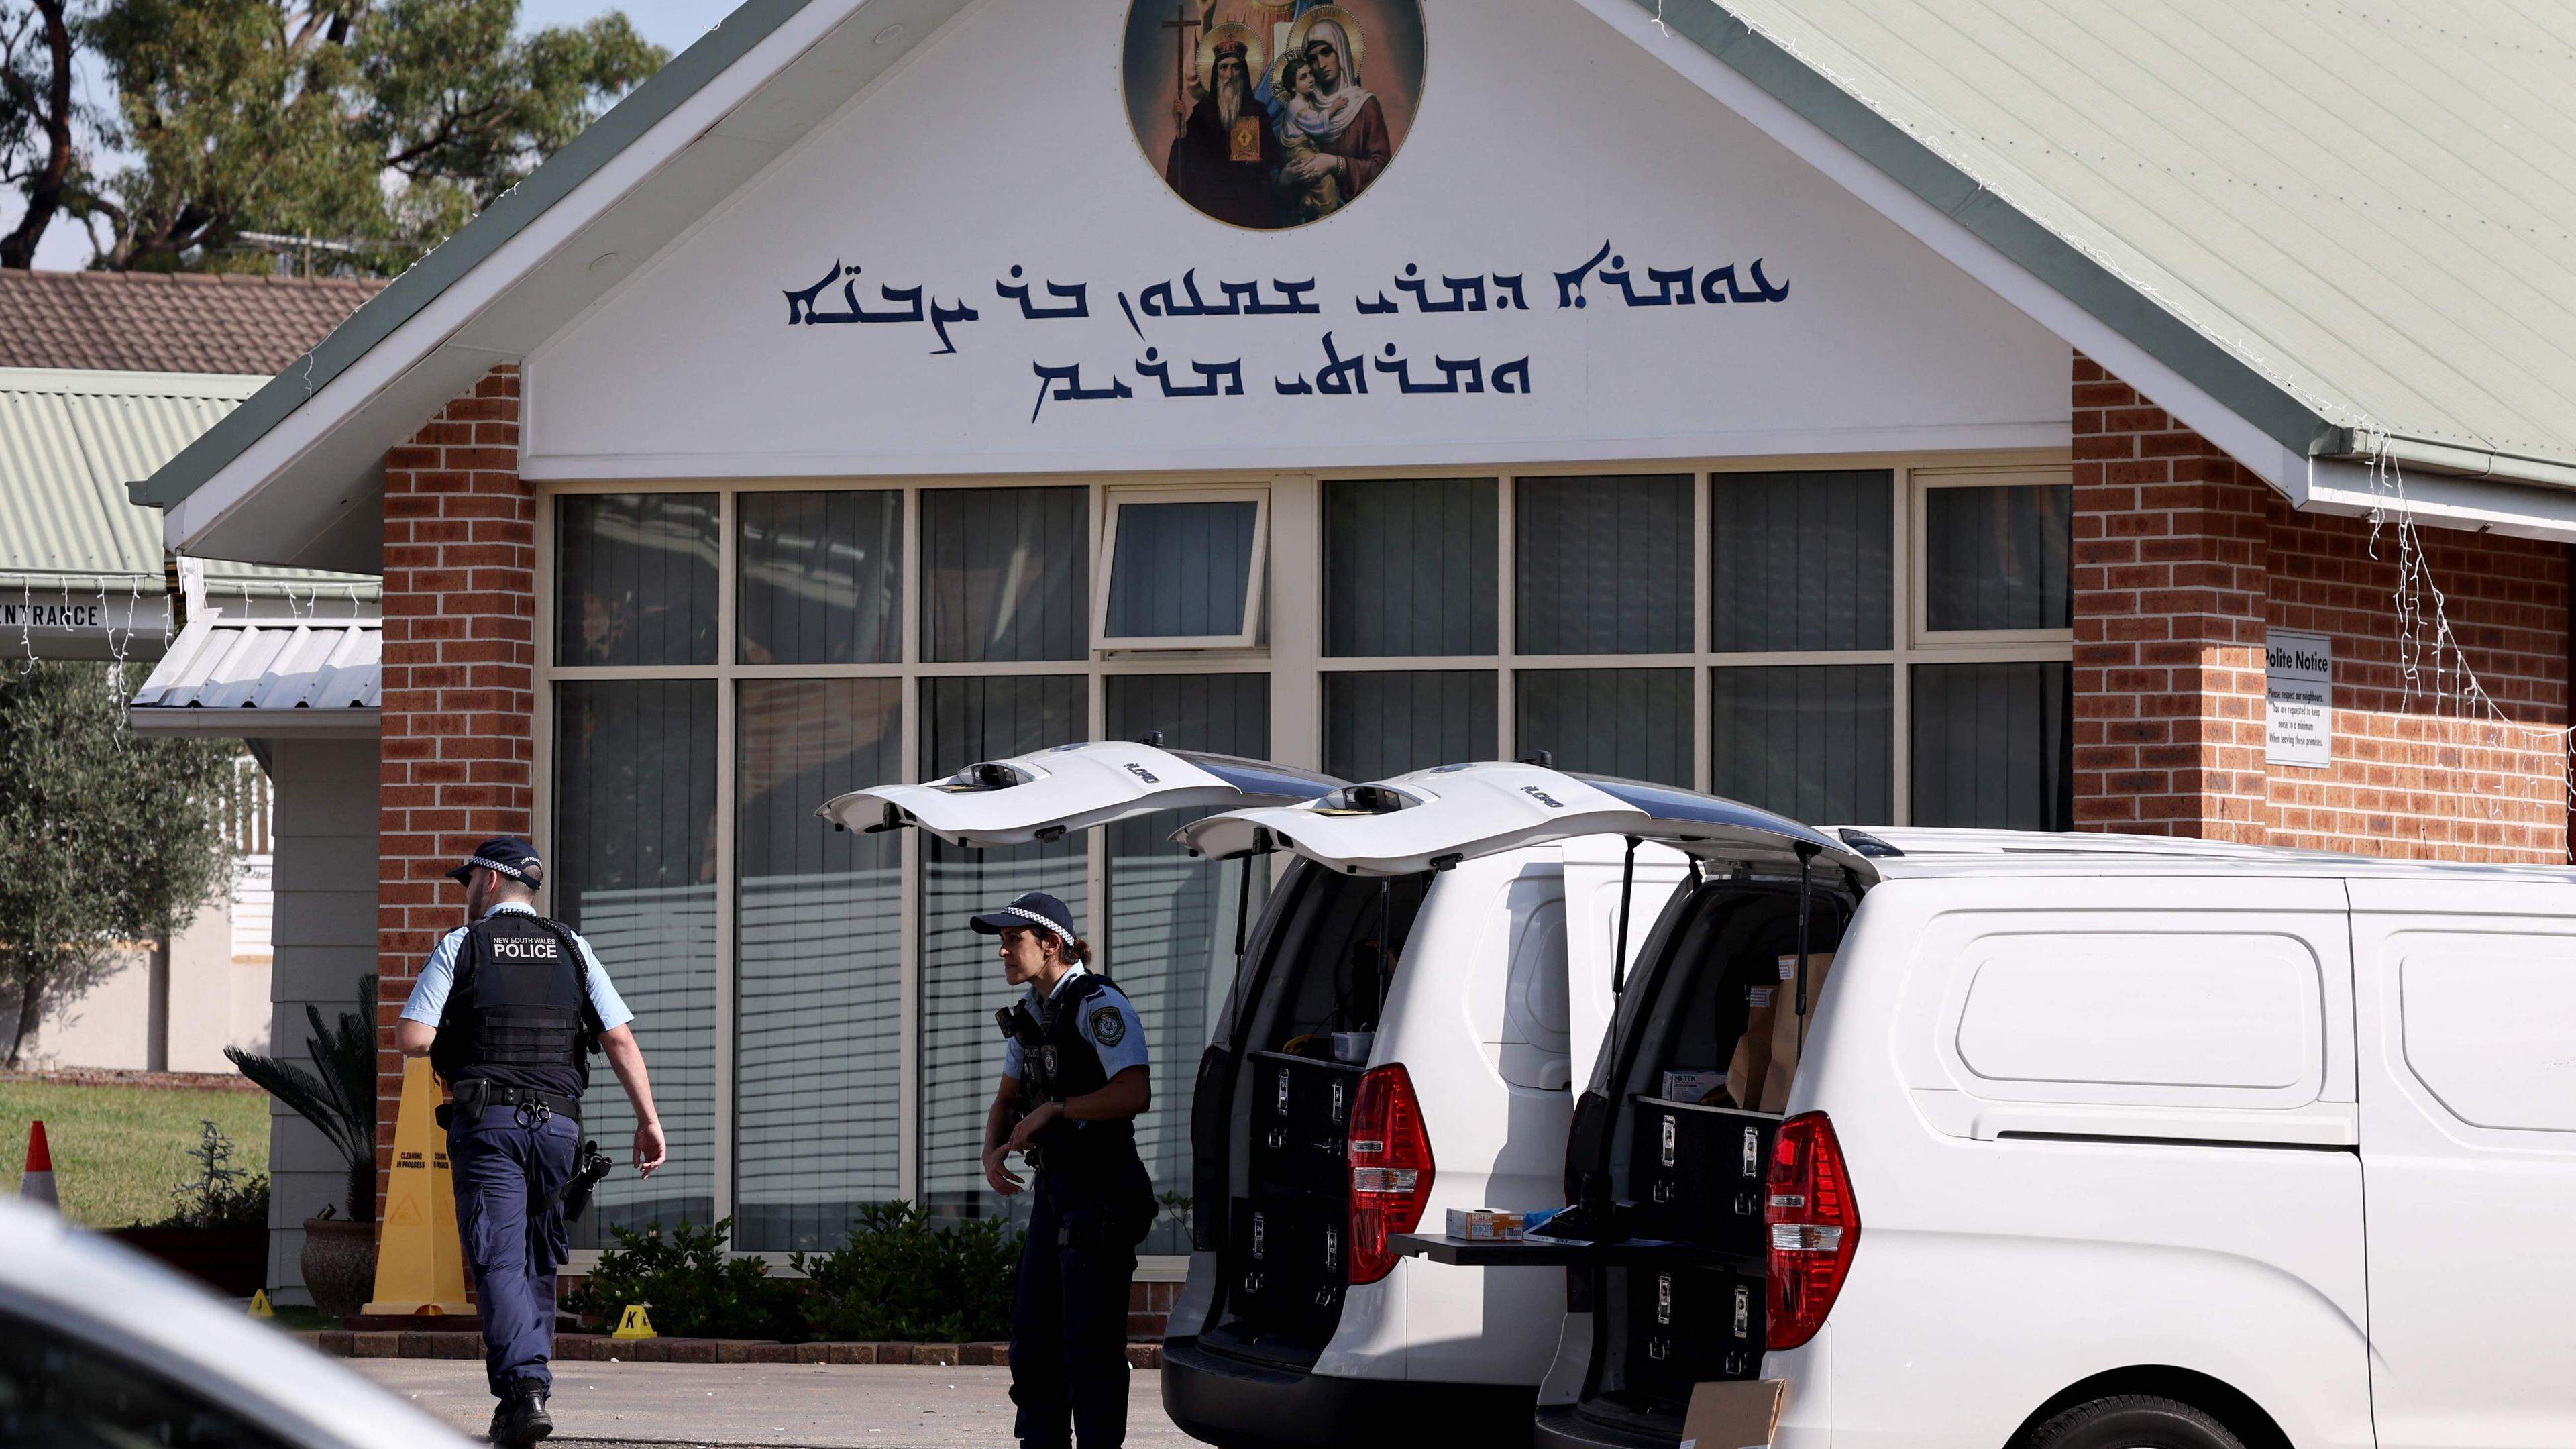 Le 16 avril, la police australienne a déclaré que l’attaque brutale au couteau perpétrée lors d’un service religieux retransmis en direct était un acte «terroriste» motivé par la religion.